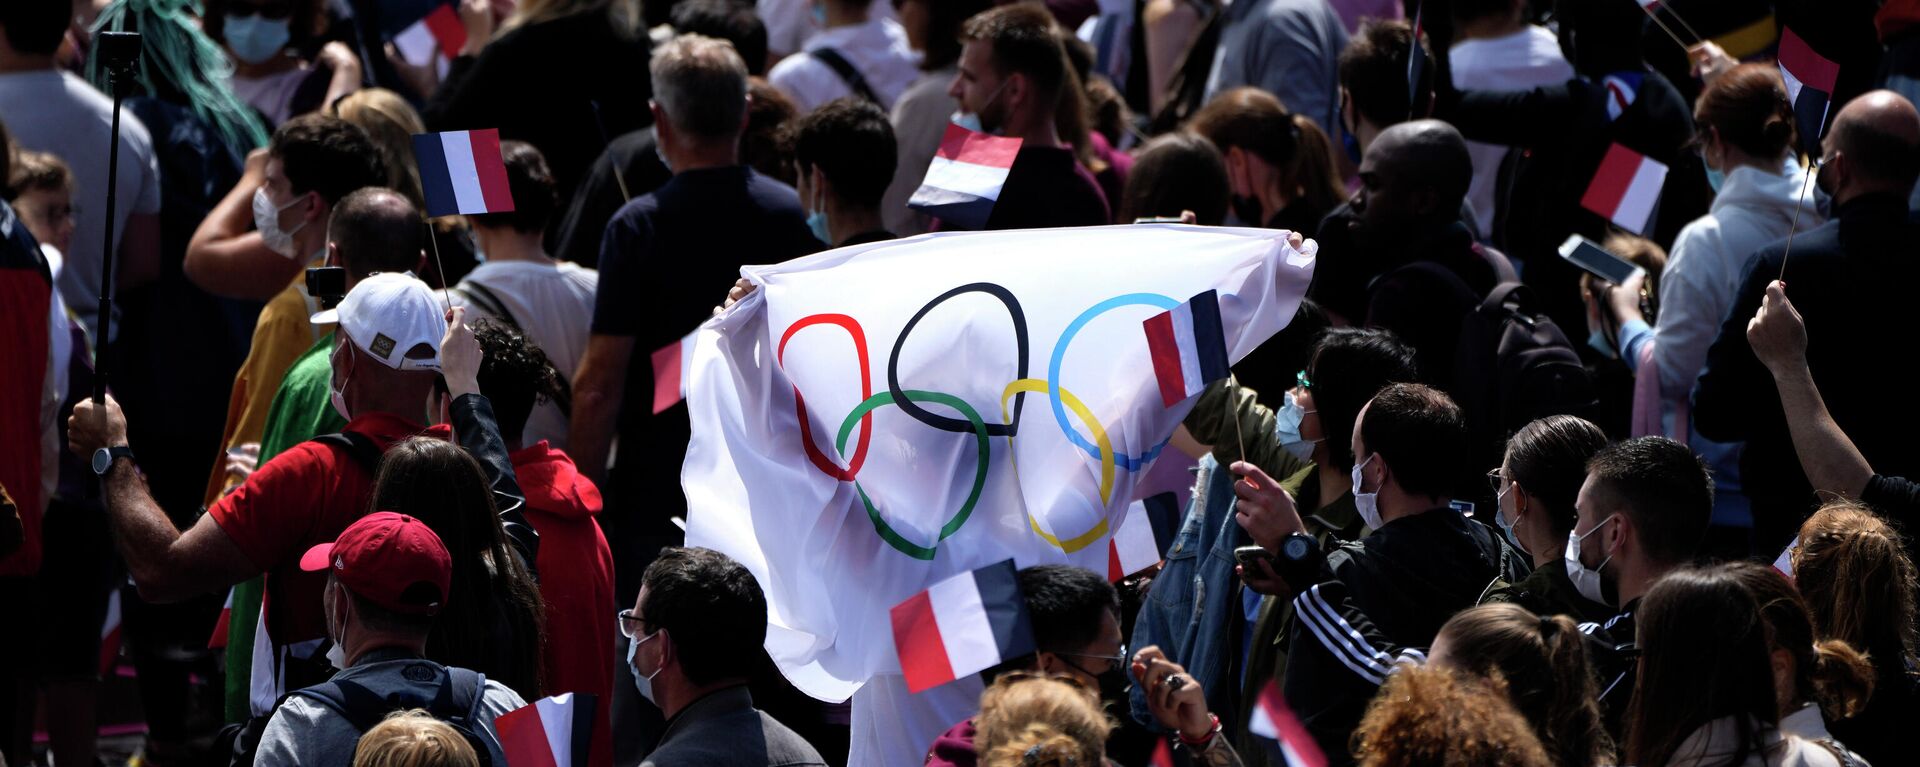 Болельщики несут флаг в фан-зоне Олимпийских игр в садах Трокадеро перед Эйфелевой башней в Париже, воскресенье, 8 августа 2021 года - Sputnik Беларусь, 1920, 08.08.2021